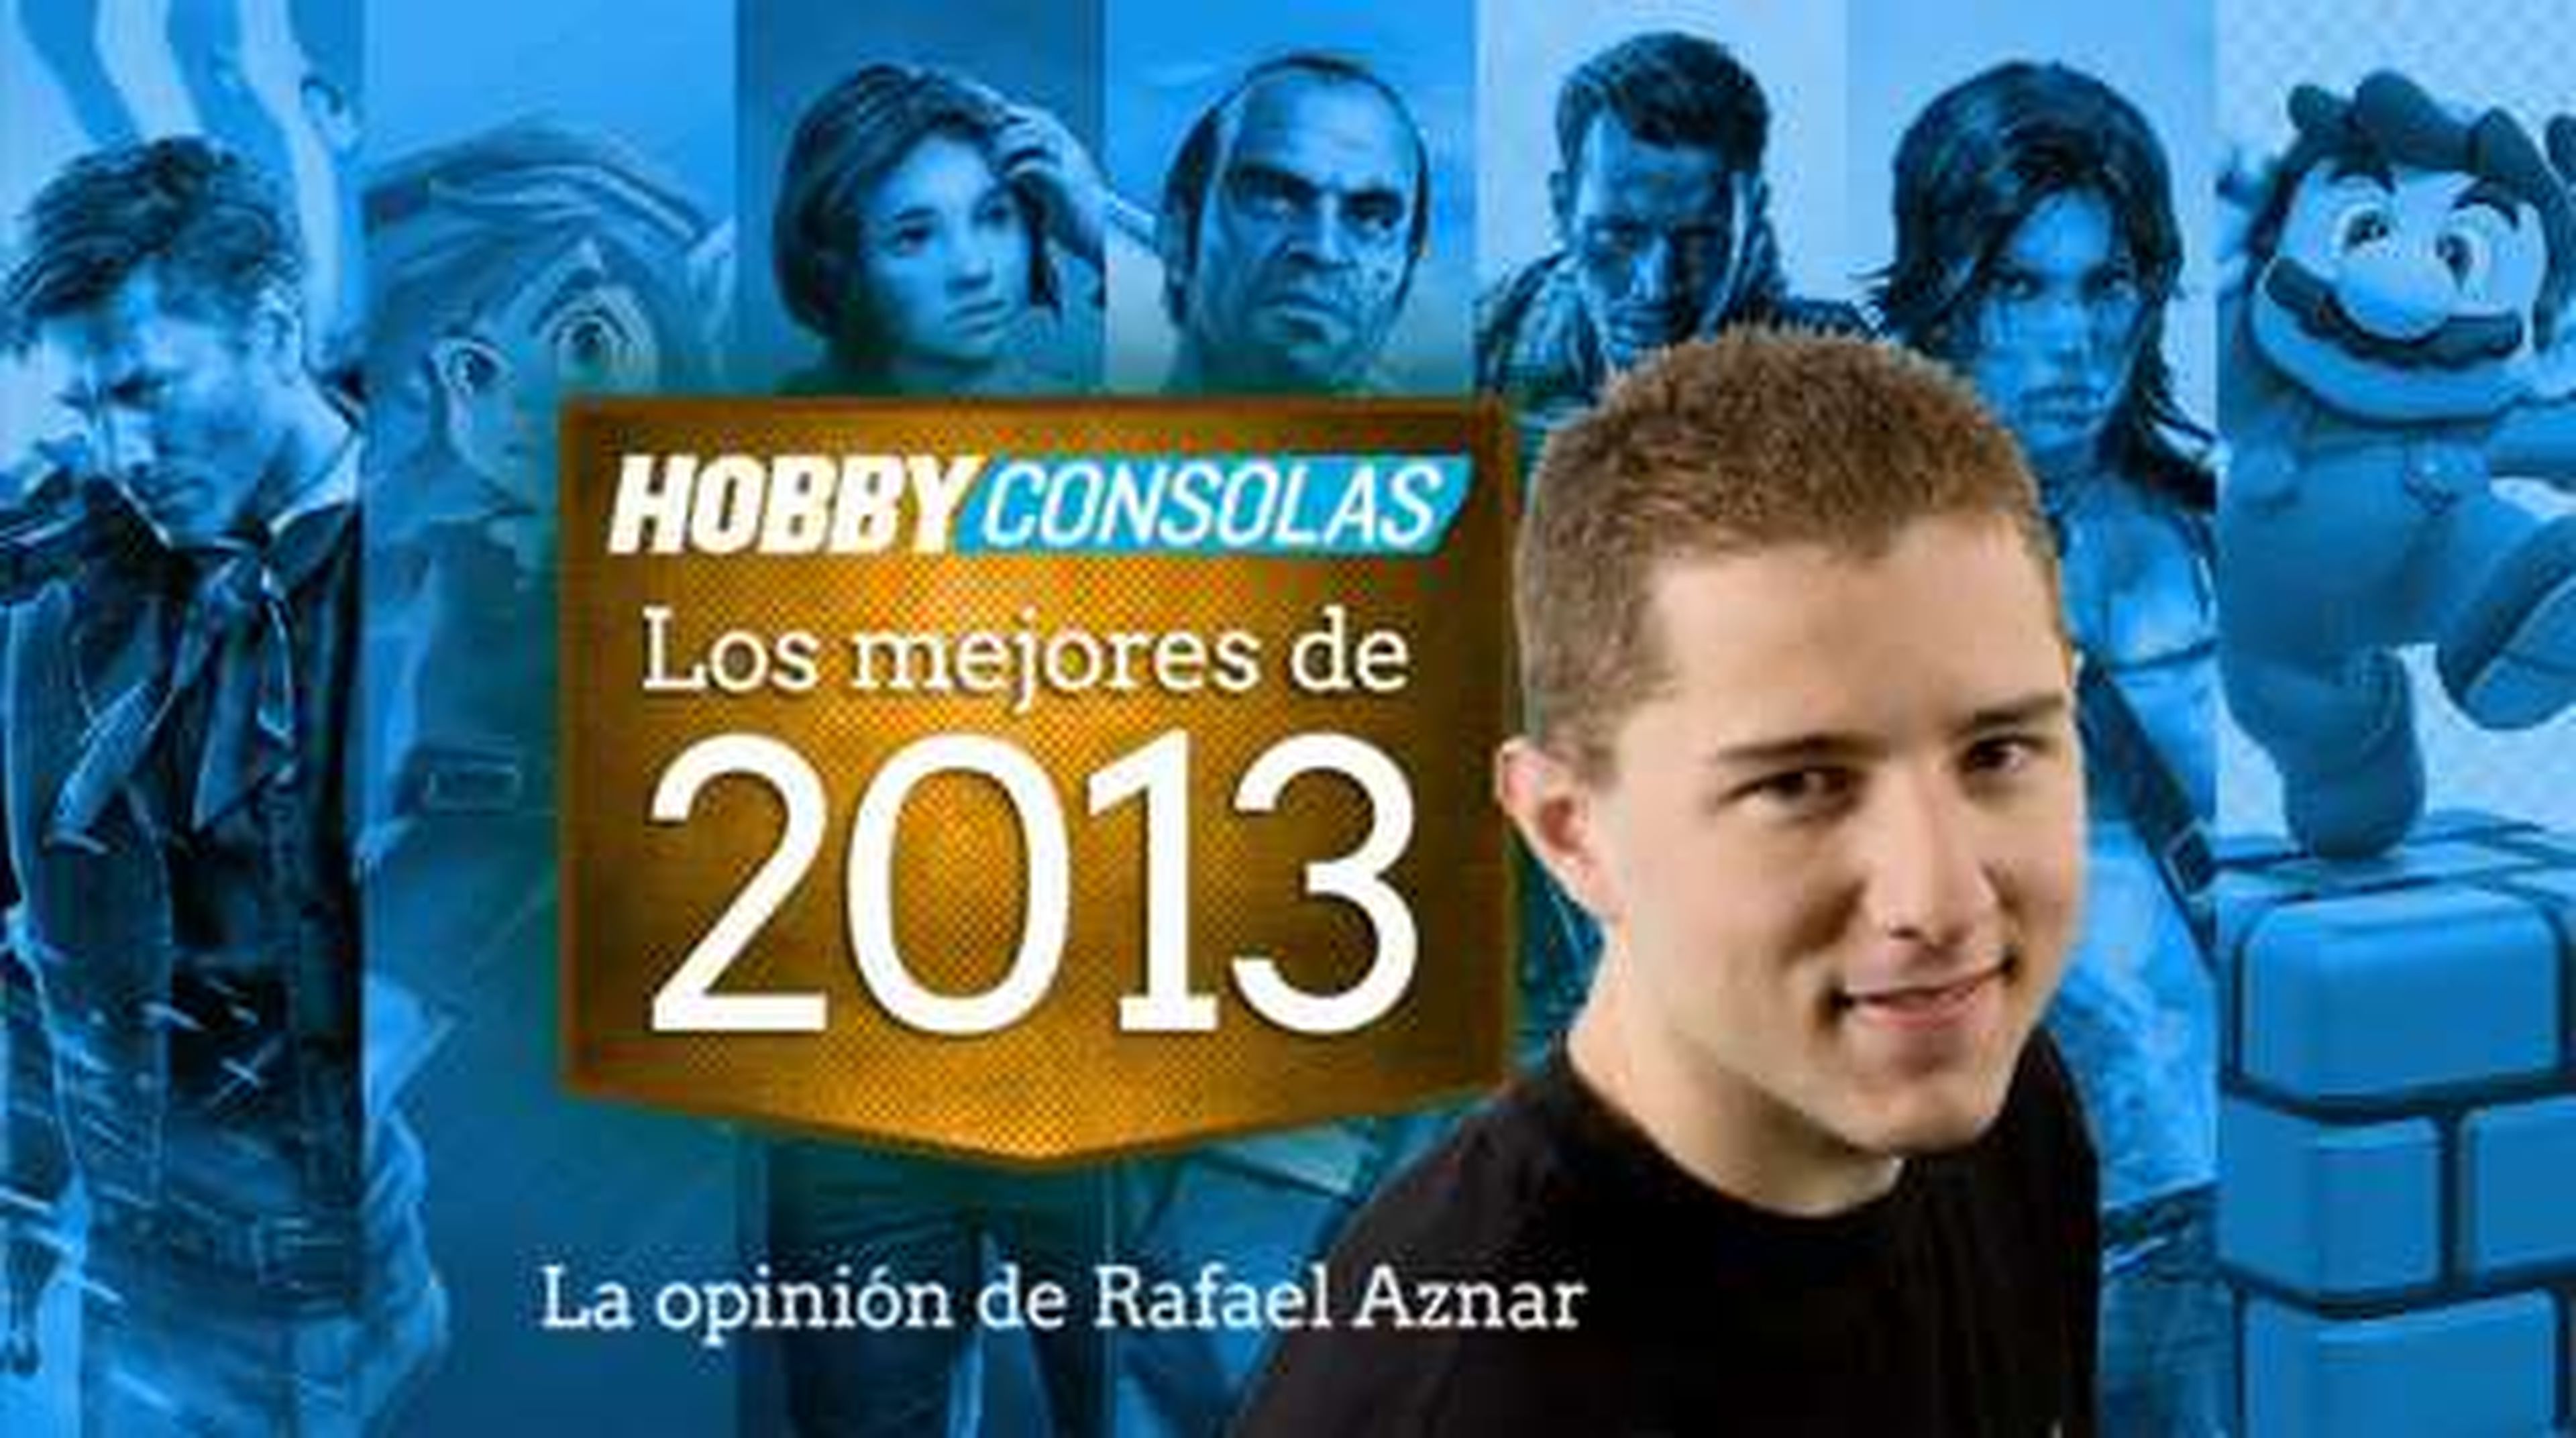 Lo mejor de 2013 (HD) Rafael Aznar en HobbyConsolas.com